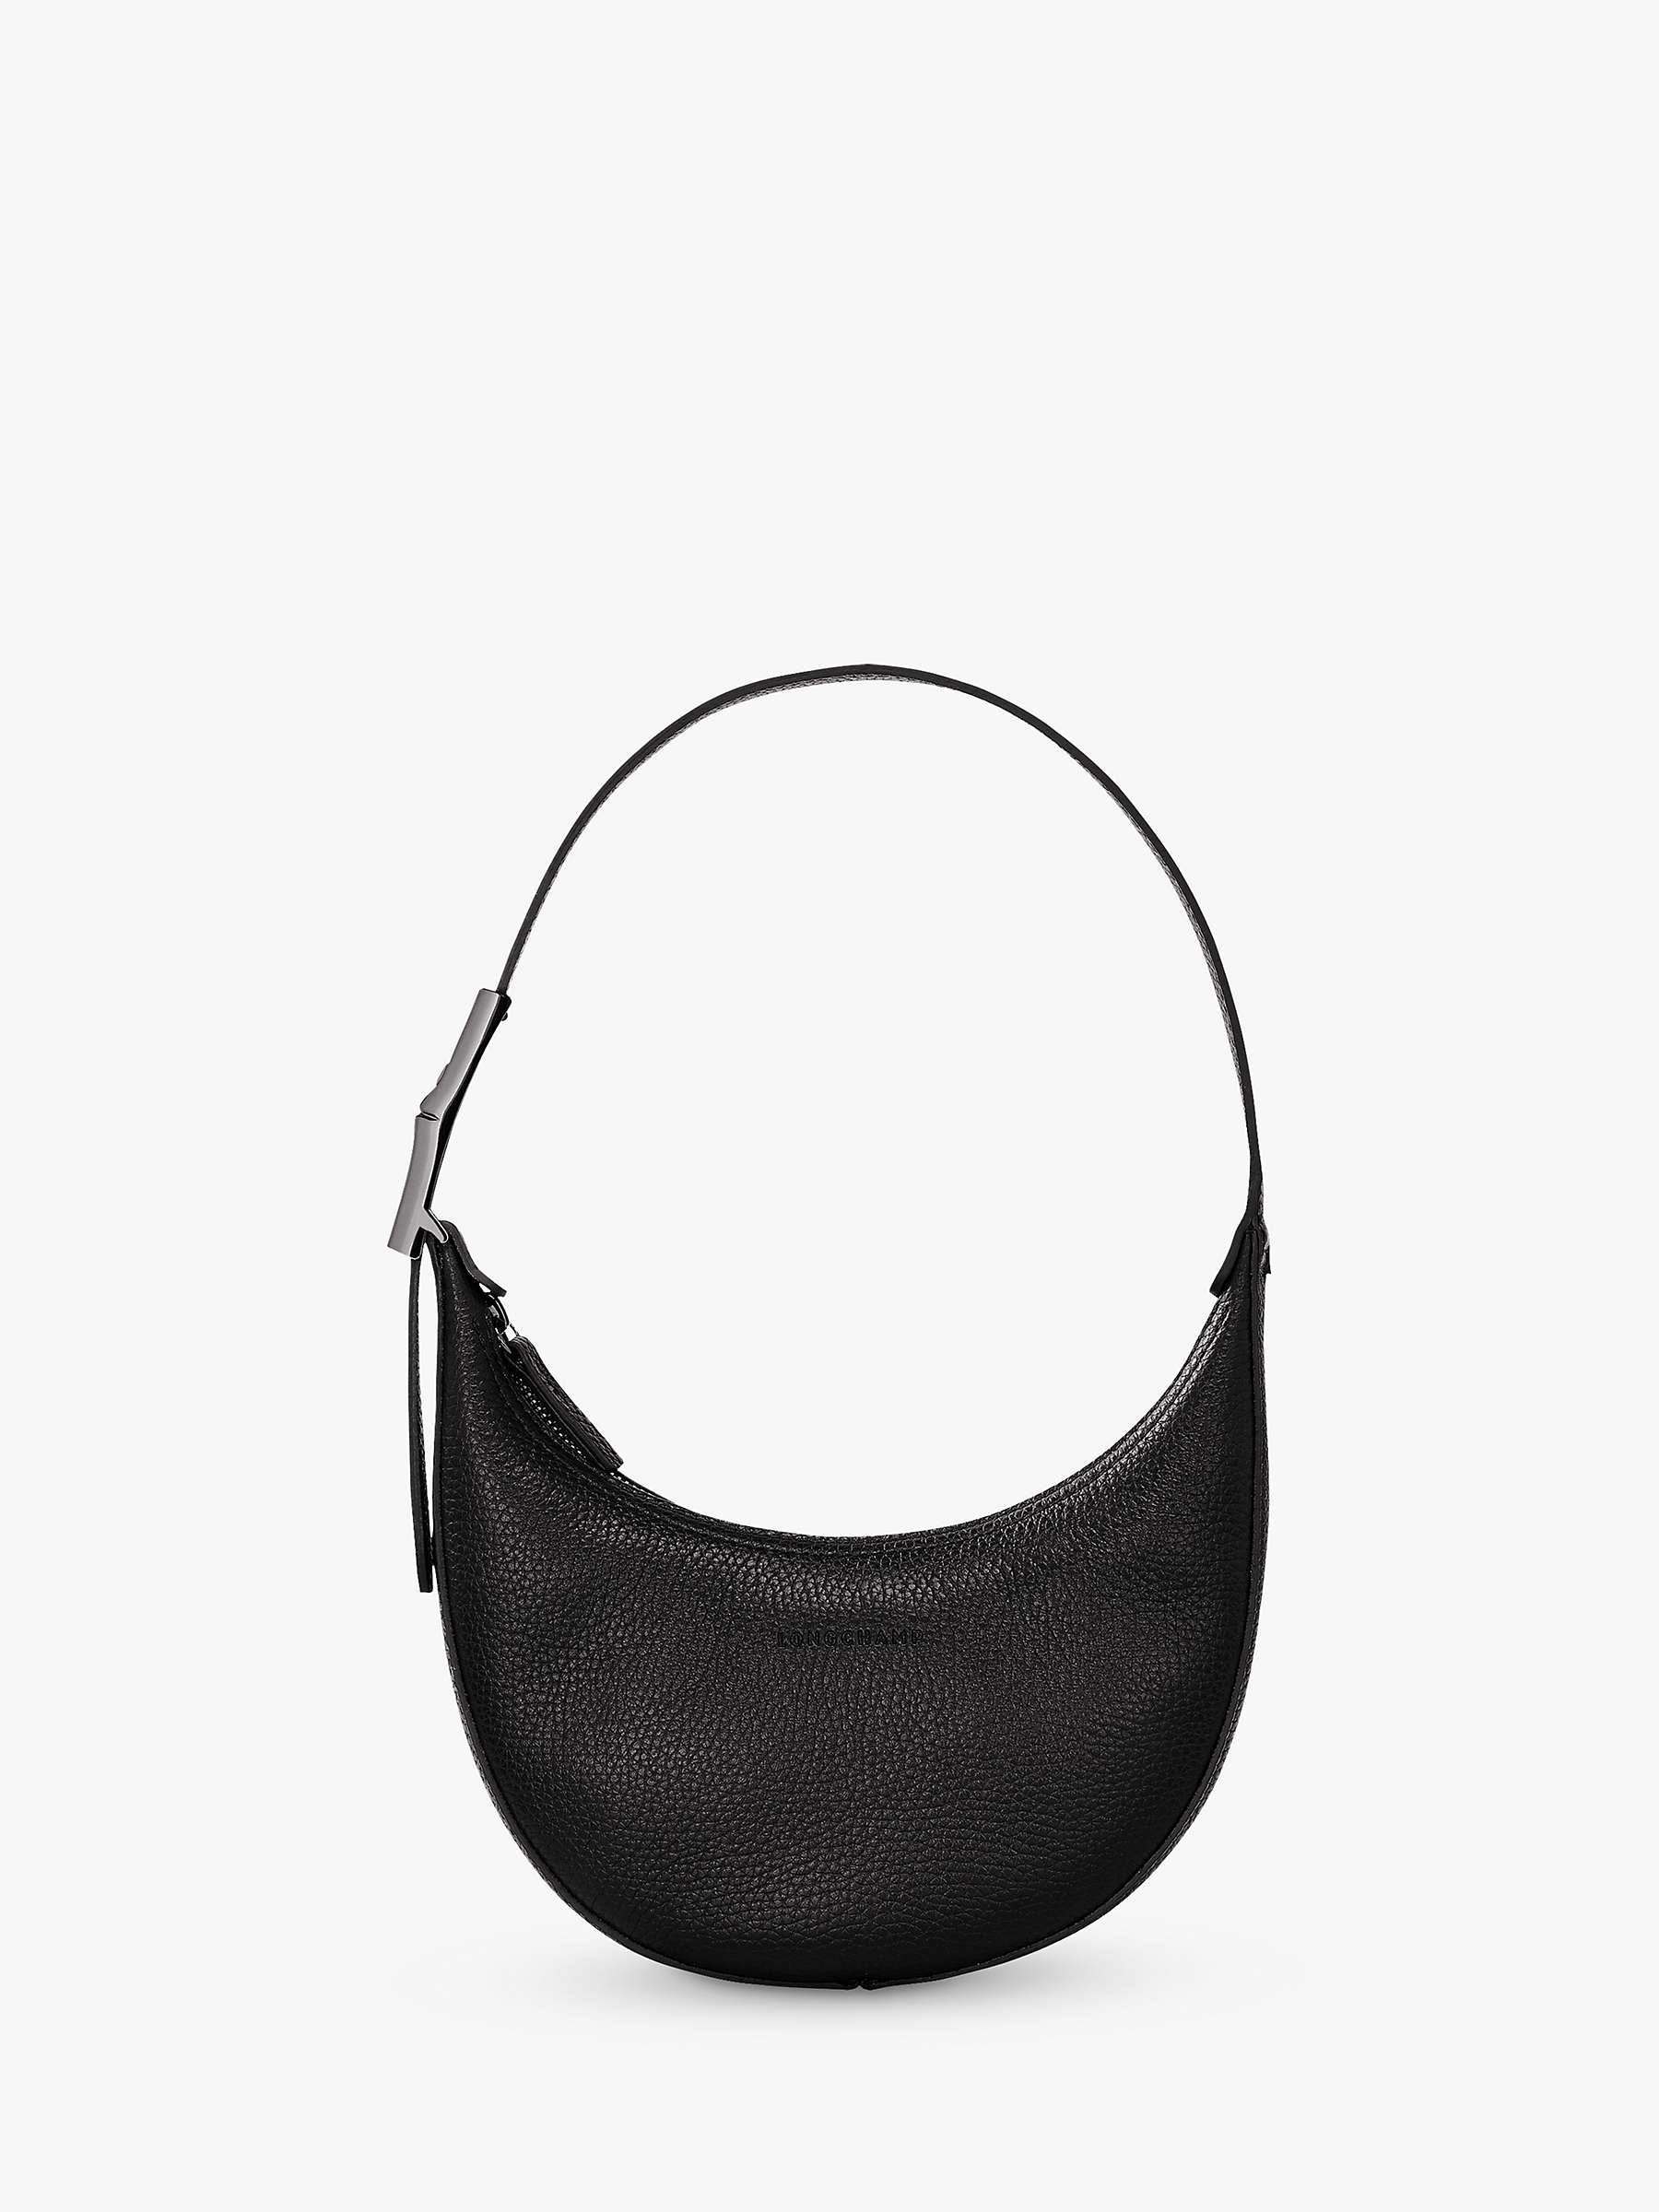 Longchamp Roseau Essential Small Hobo Shoulder Bag, Black at John Lewis ...